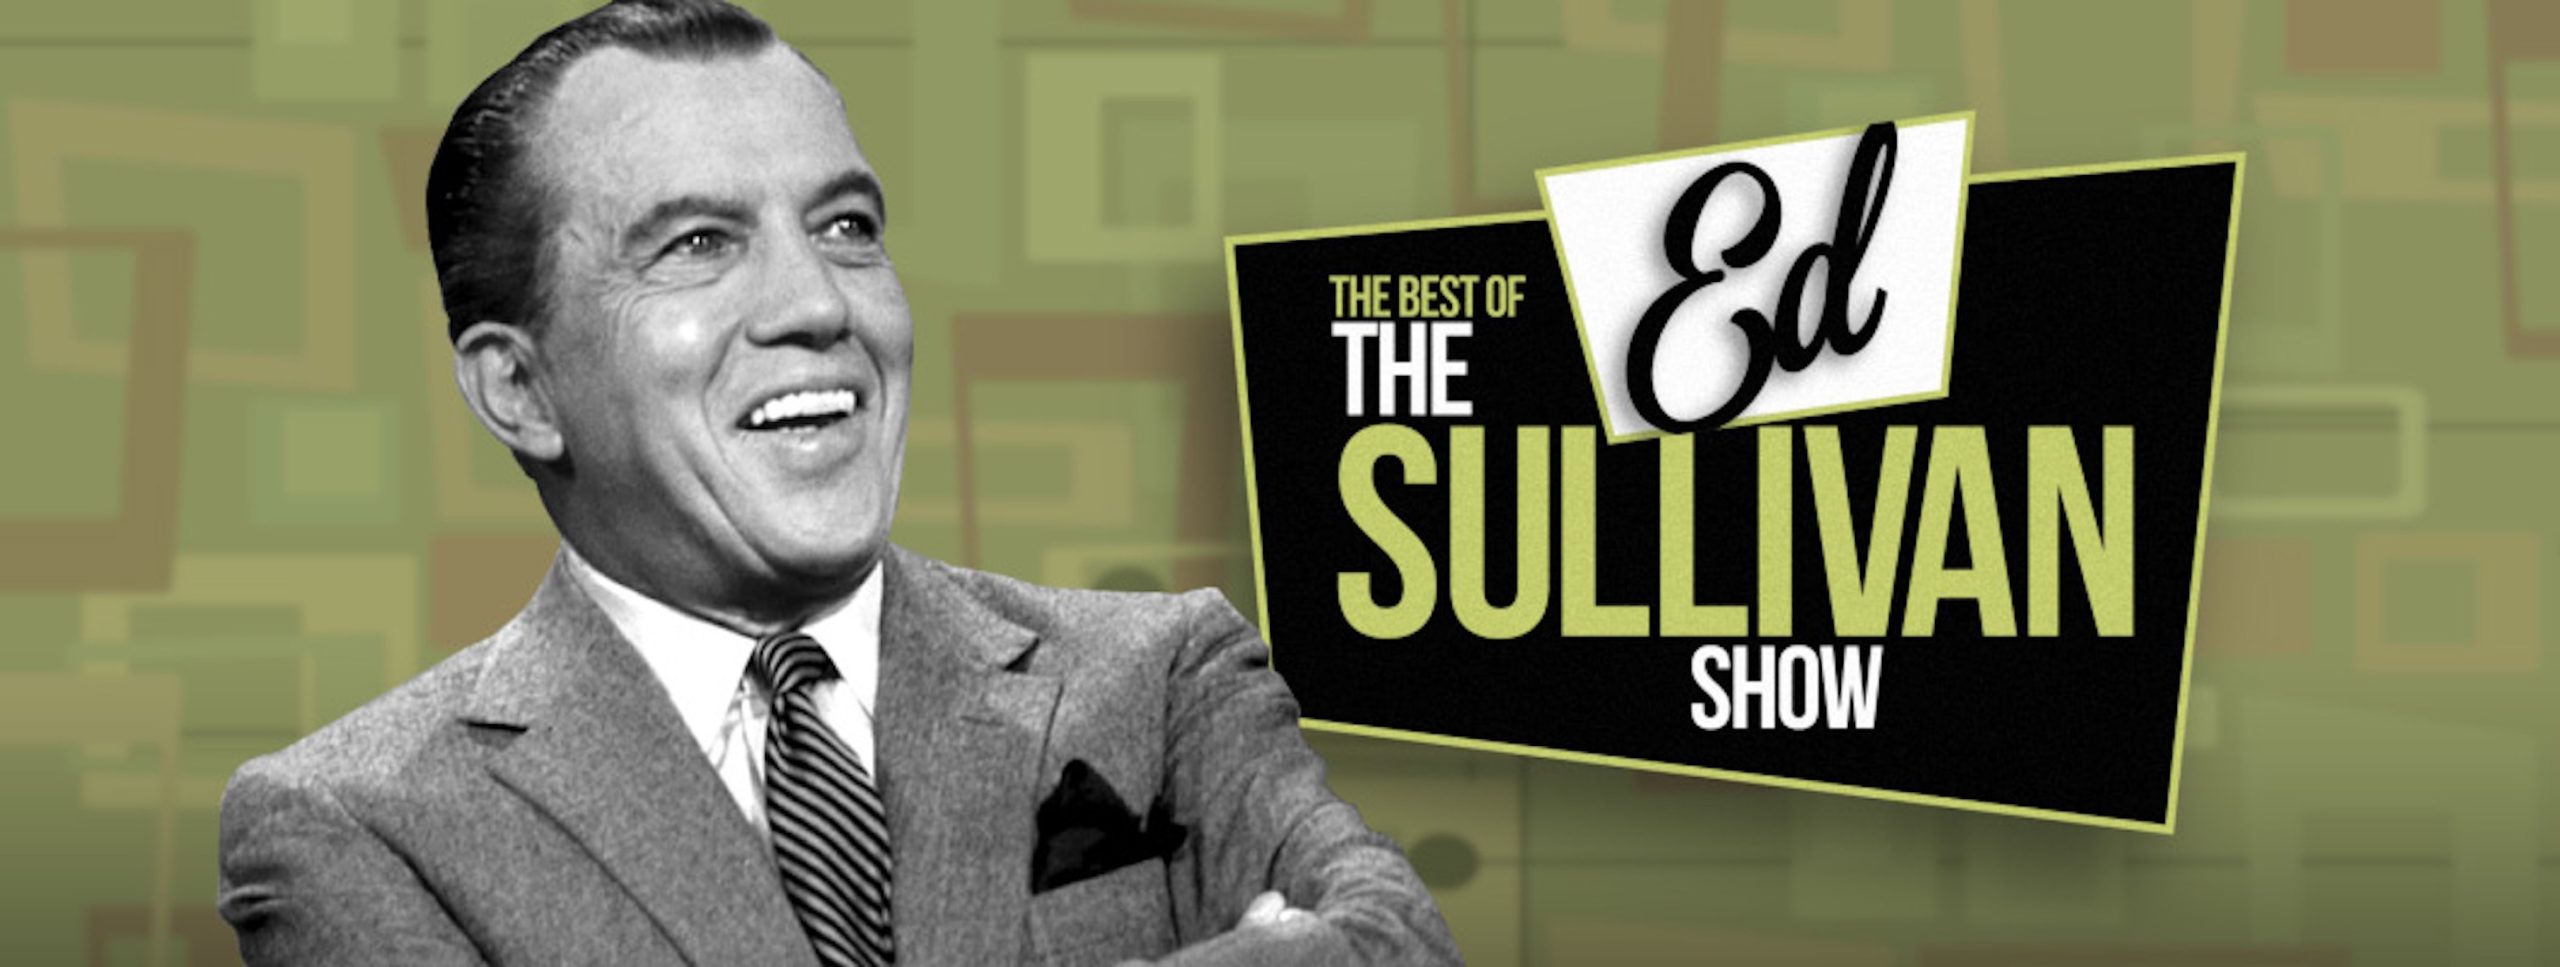 Η θρυλική εκπομπή του Ed Sullivan έπιασε το 1 δισ. views στο YouTube και το Facebook